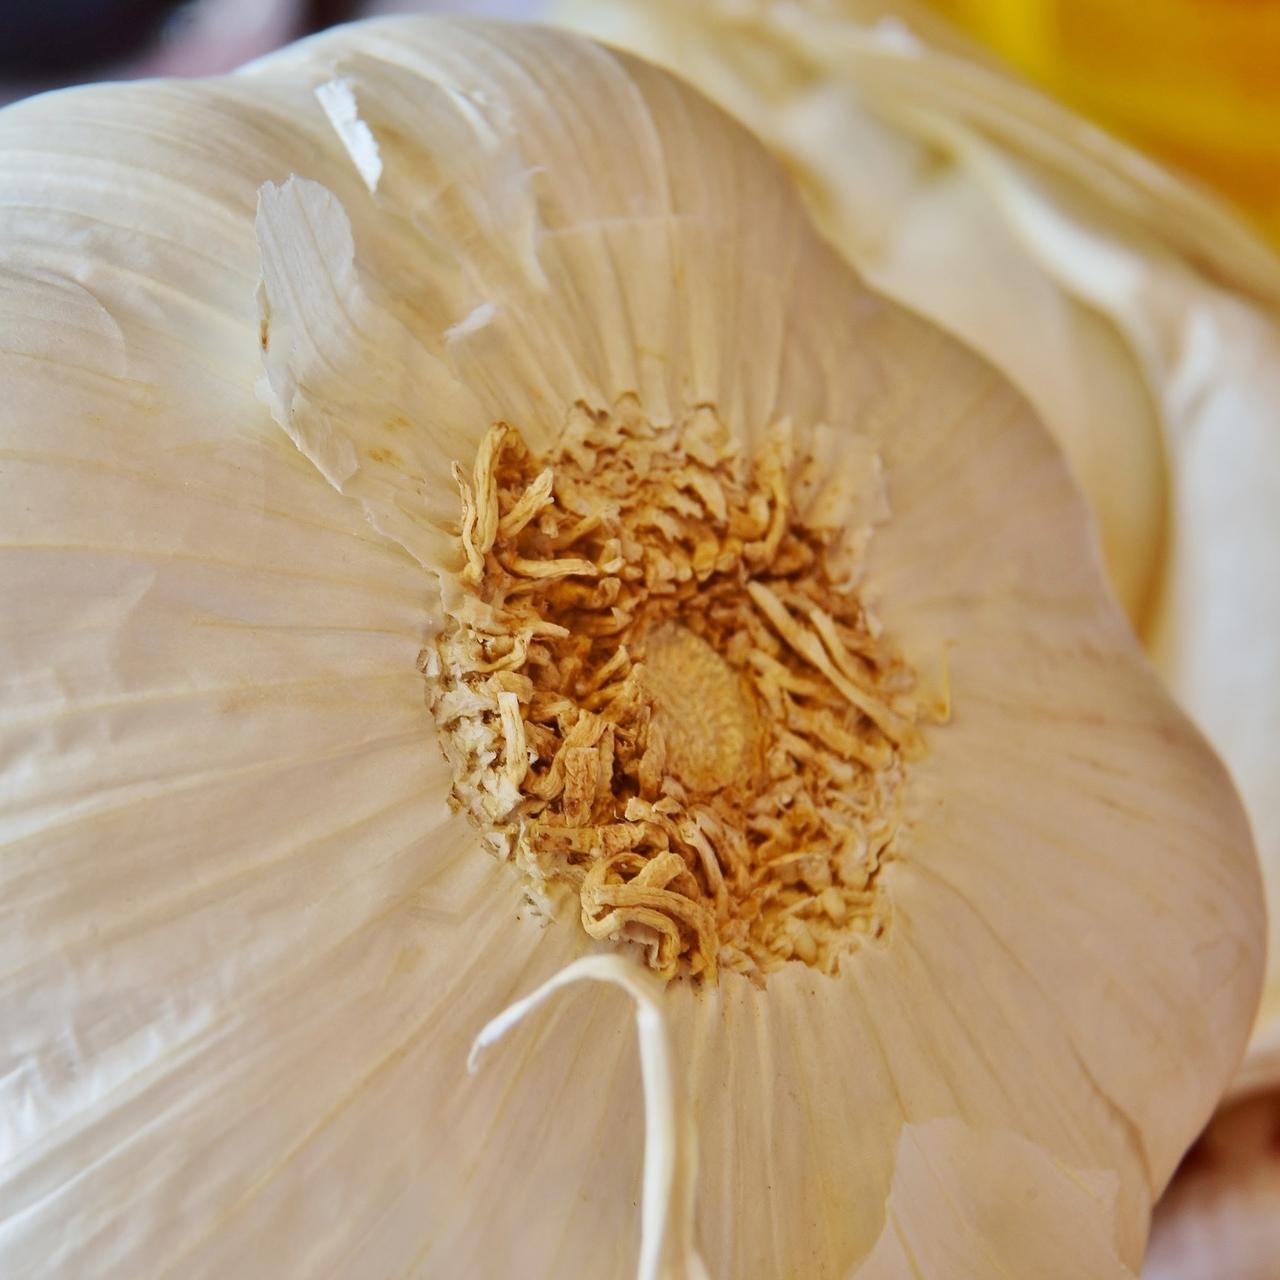 3 bulbs of garlic